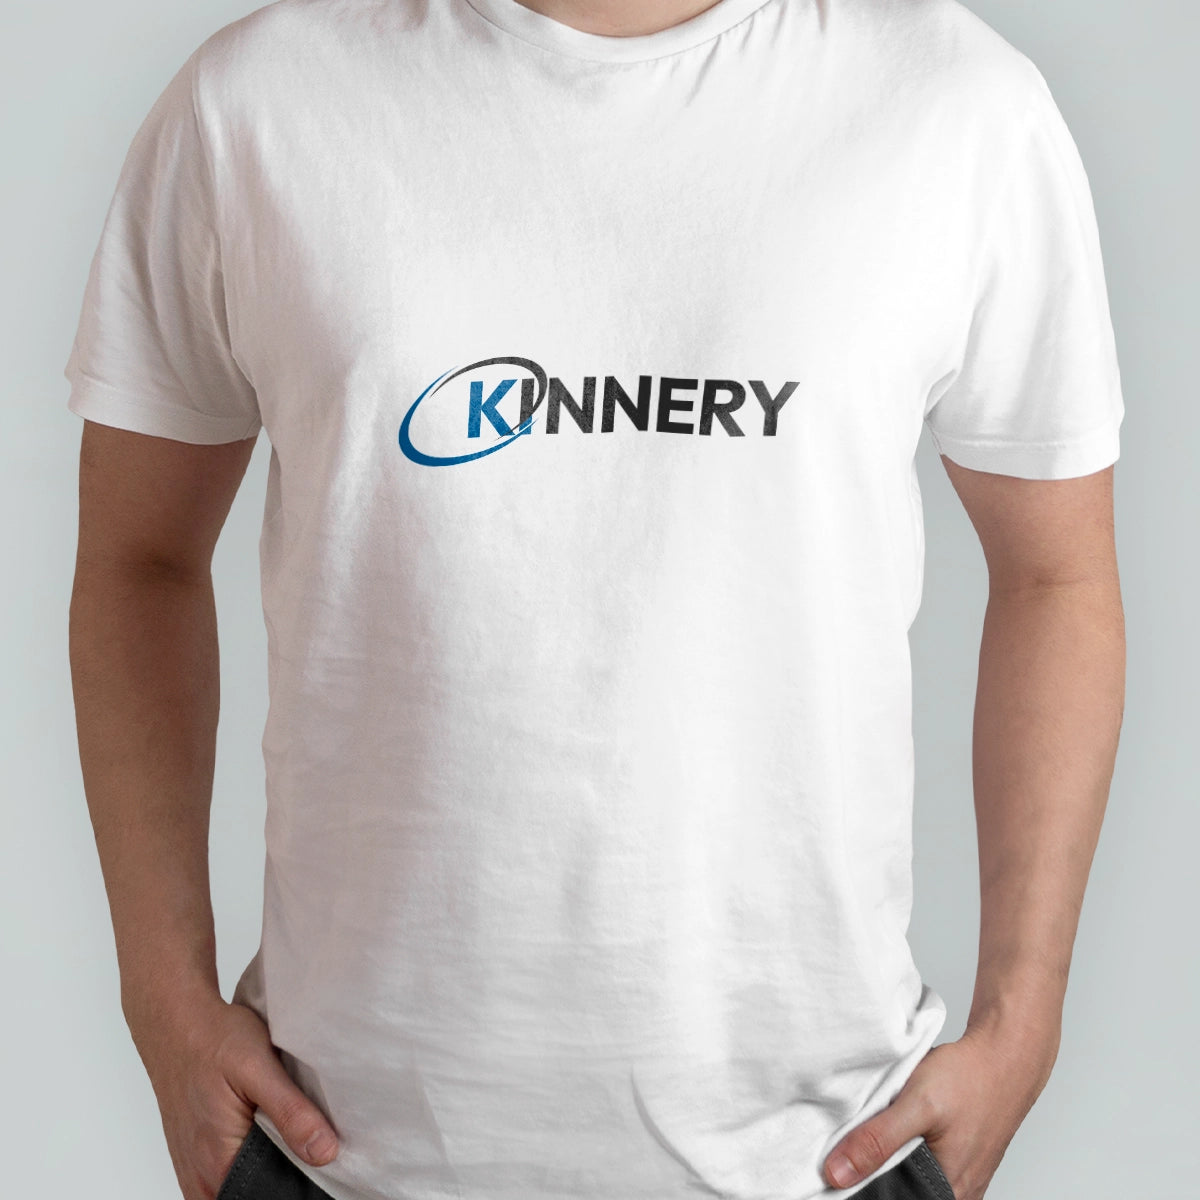 Kinnery.com